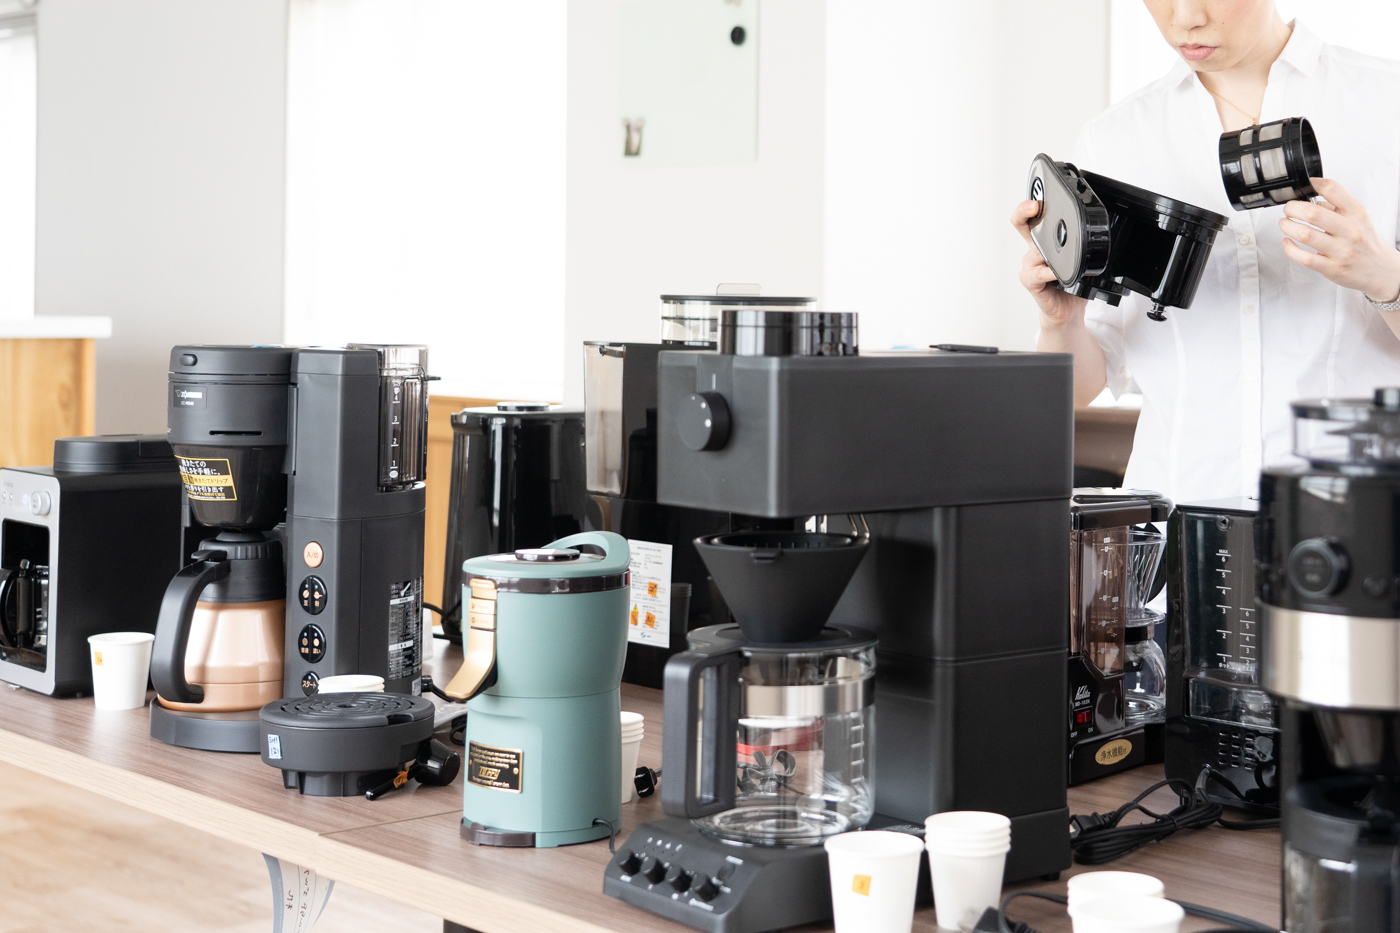 メリタ ミル付き全自動コーヒーメーカー アロマフレッシュサーモ 2~10杯用 コーヒーメーカー